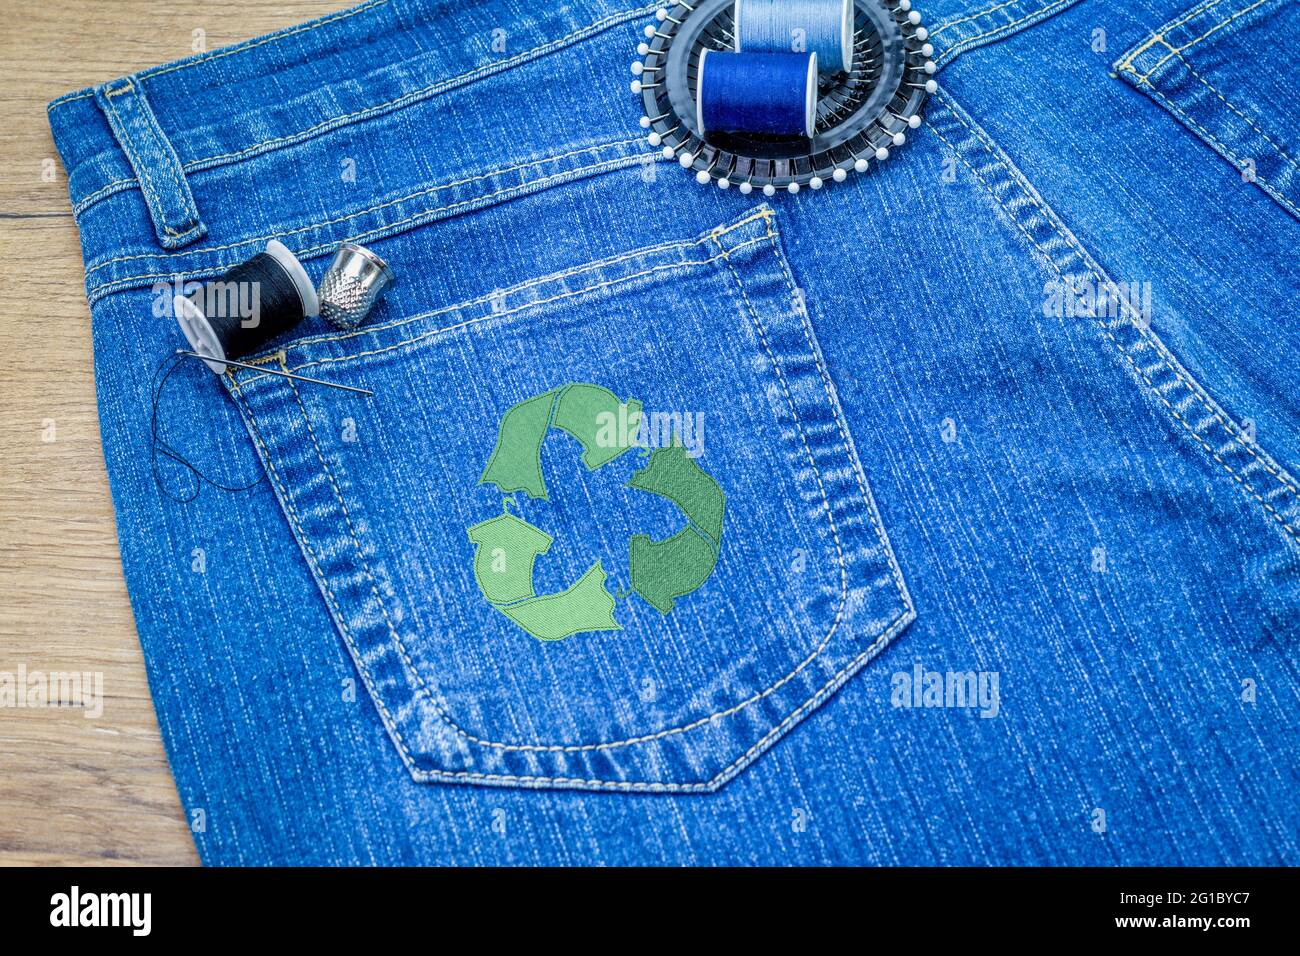 Riciclare l'icona dei vestiti su jeans, concetto di moda sostenibile, riparazione, riciclaggio, riutilizzo di vestiti e tessuti per ridurre gli sprechi Foto Stock